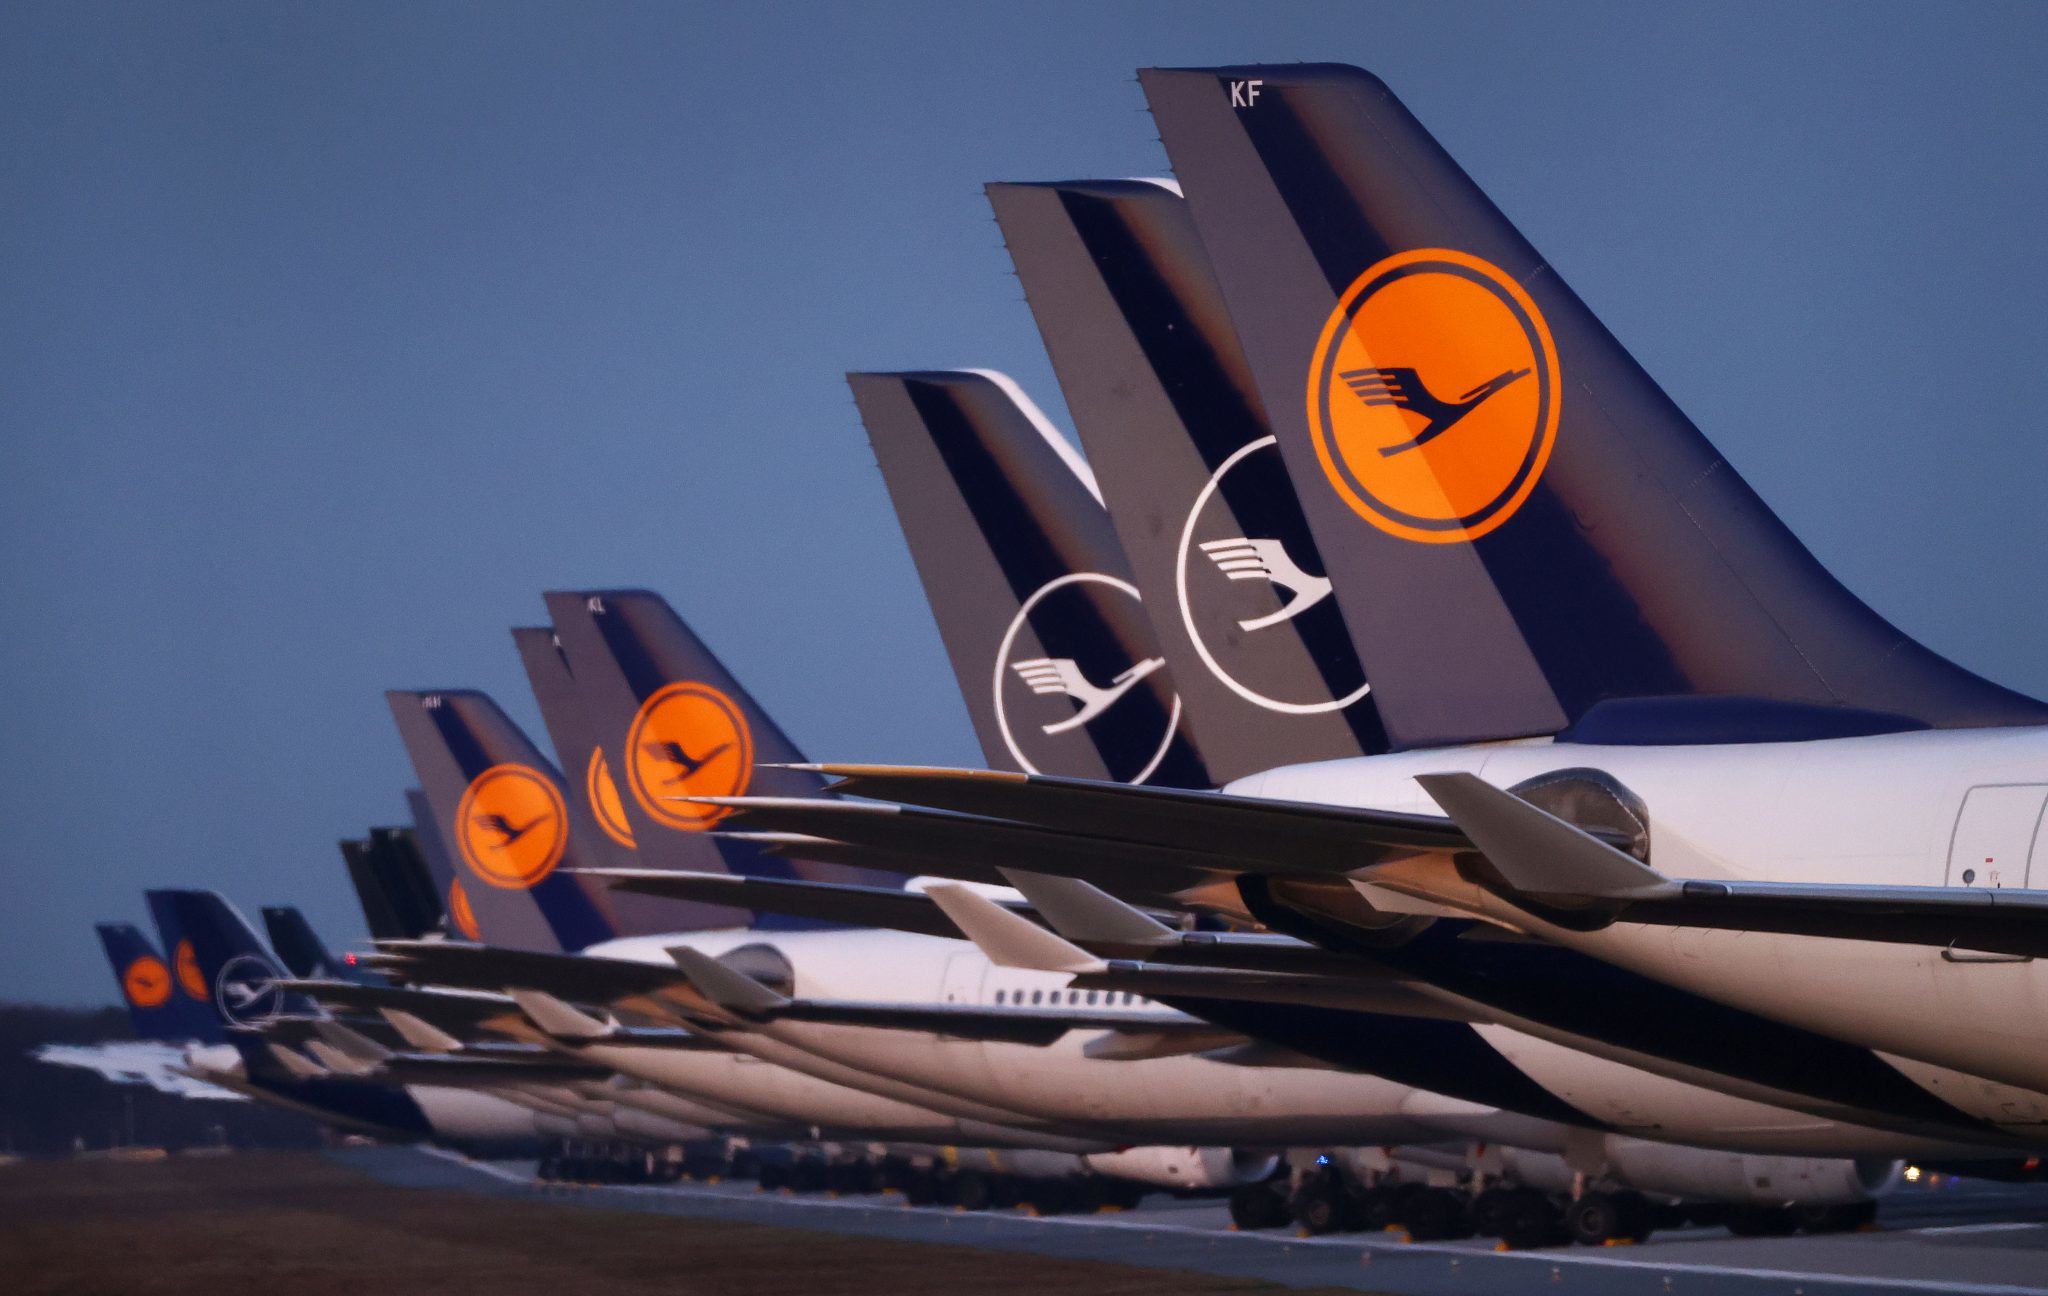 Μια διακοπή καλωδίου κατά τη διάρκεια των κατασκευαστικών εργασιών θέτει εκτός σύνδεσης τα συστήματα της Lufthansa αφήνοντας χιλιάδες επιβάτες αποκλεισμένους